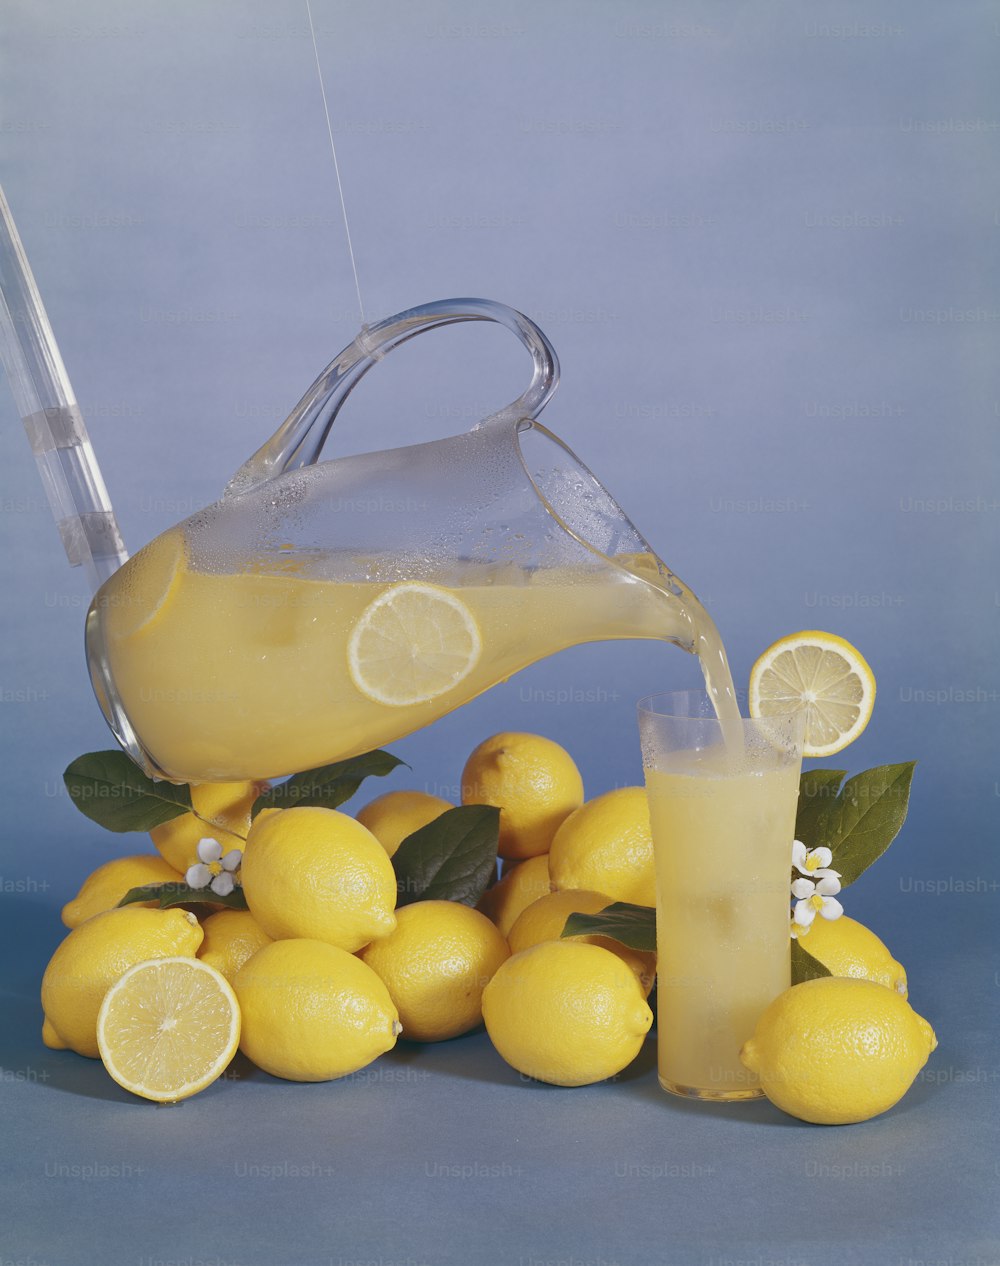 una brocca di limonata versata su un mucchio di limoni